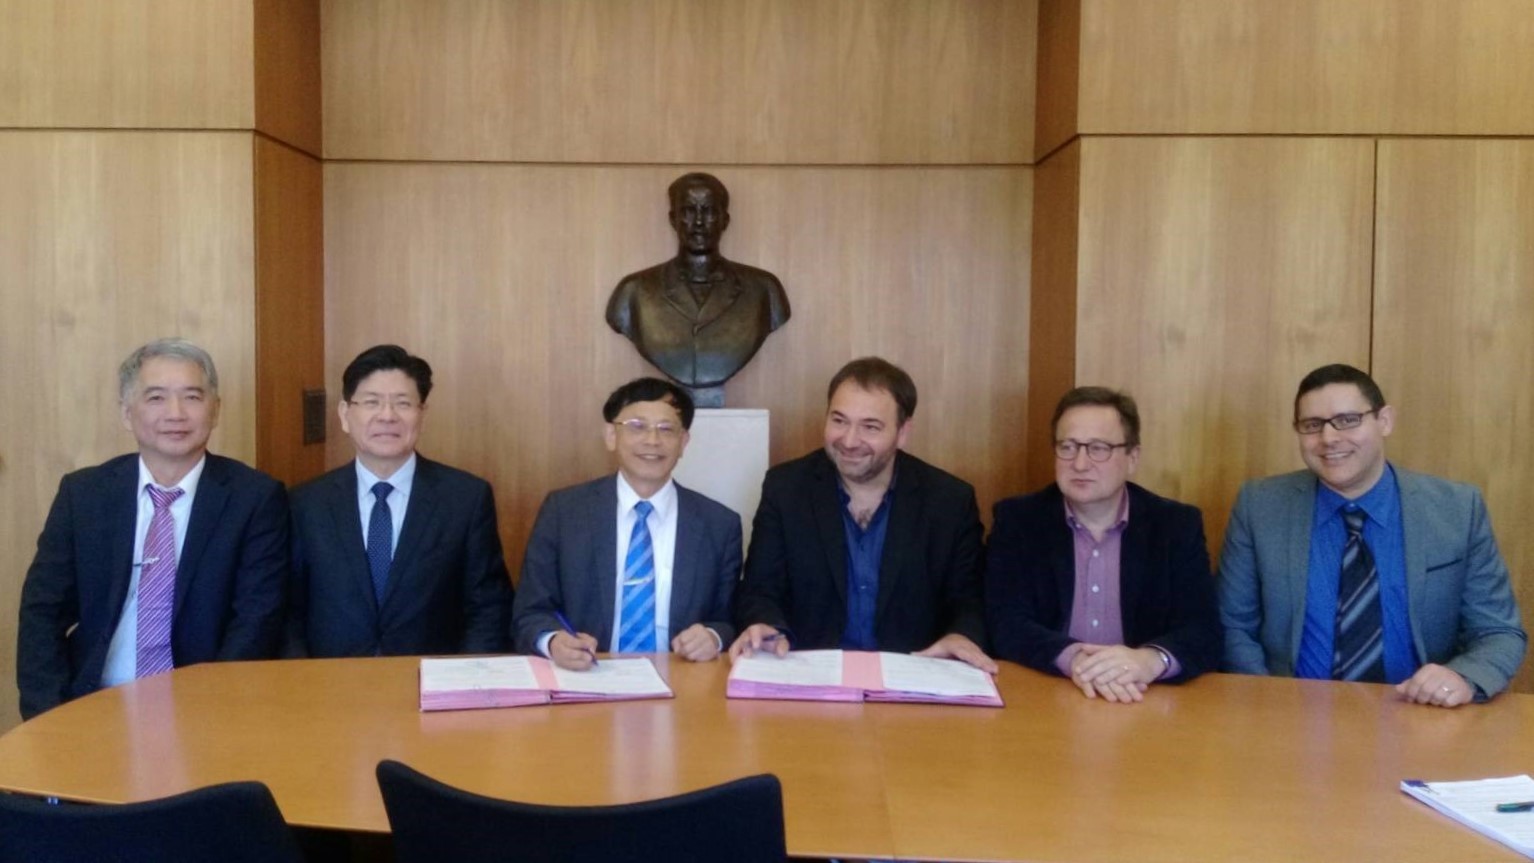 臺海大與法國里爾大學在台灣駐法國張銘忠大使的見証下於2017年5月10日完成締結姊妹校的簽約儀式